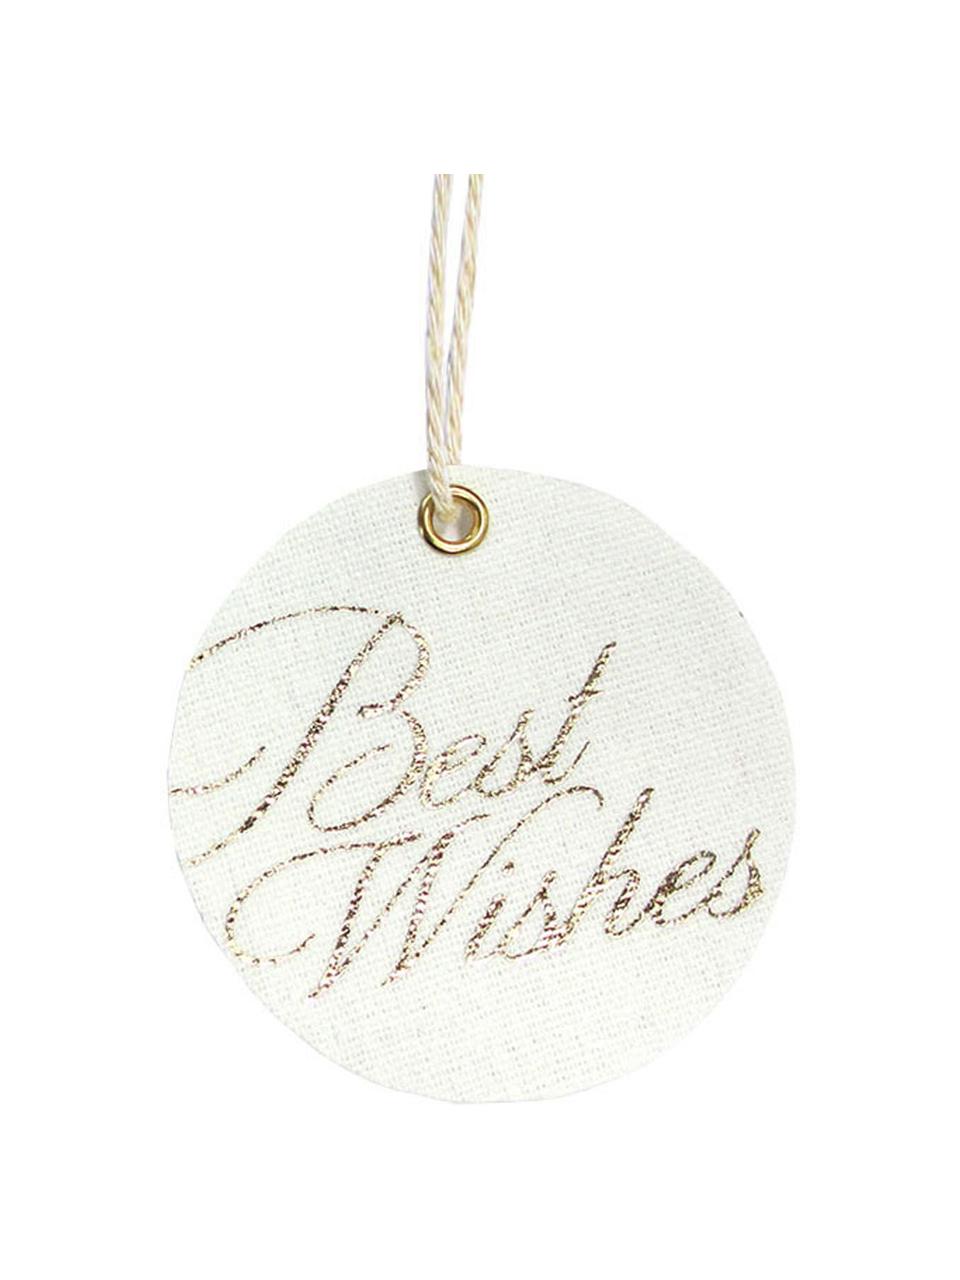 Geschenklabels set Best Wishes, 6 stuks, 60% katoen 40% polyester, Wit, goudkleurig, Ø 6 cm